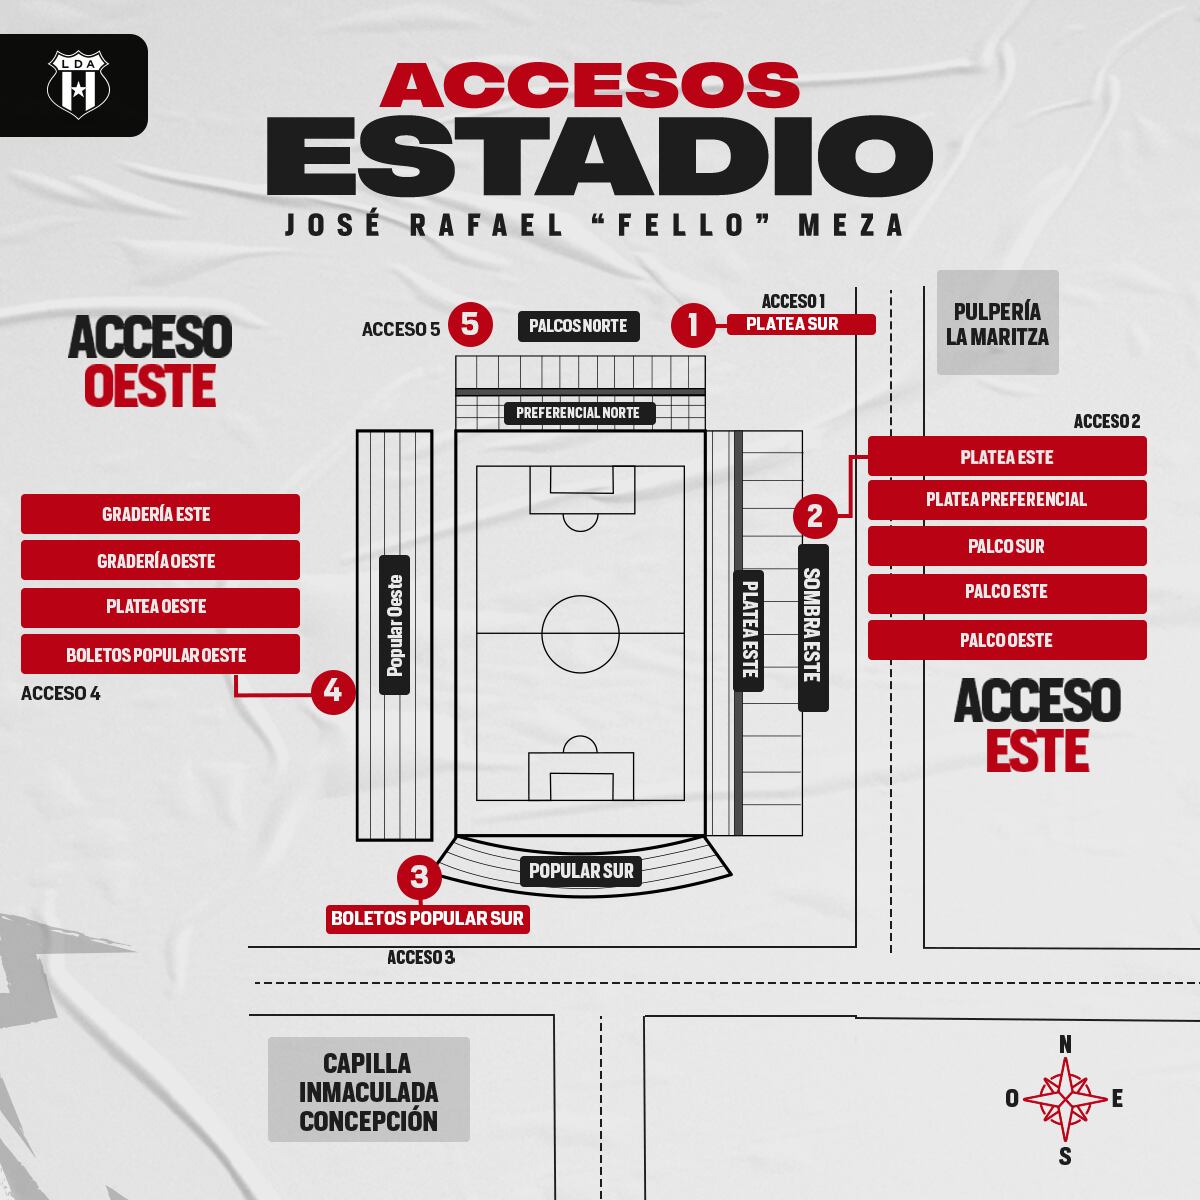 Así es como Alajuelense distribuyó los accesos para el partido del domingo contra Herediano en el Fello Meza.